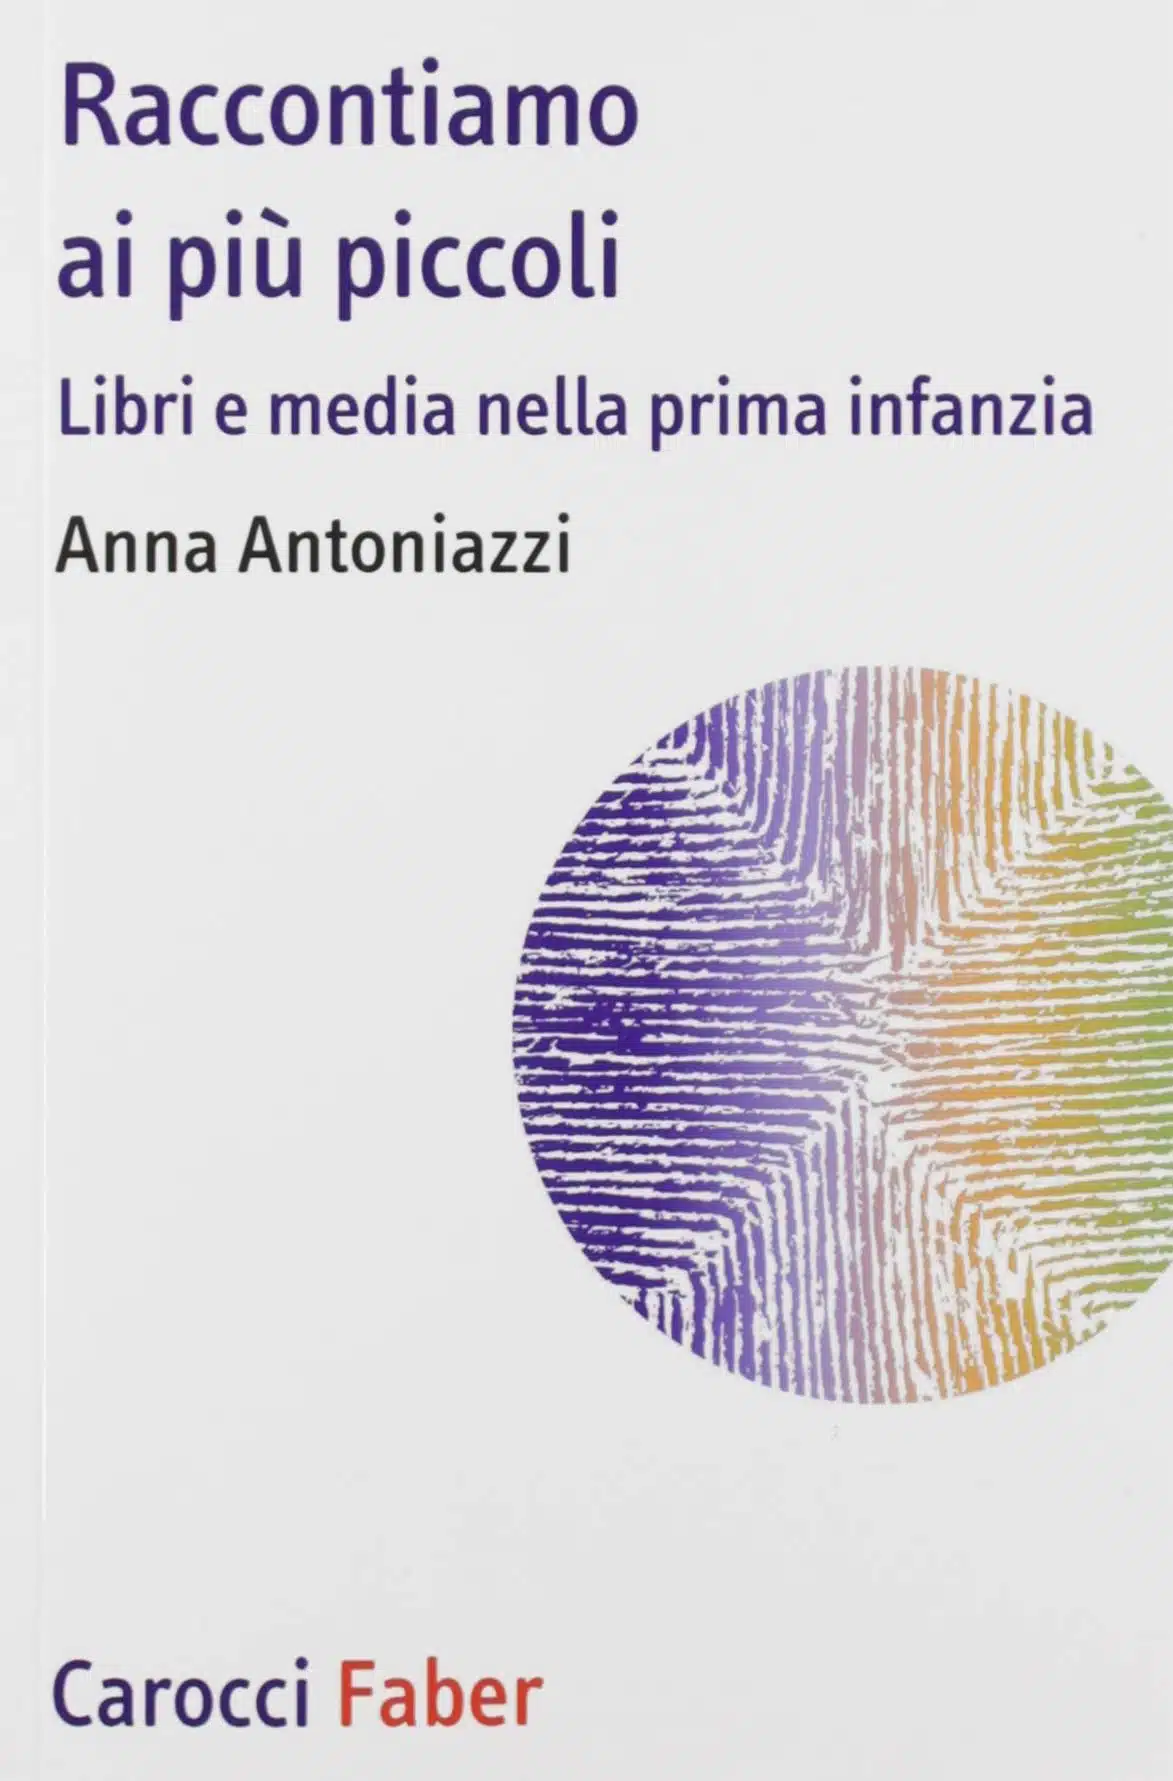 Raccontiamo ai più piccoli (2019) di Anna Antoniazzi - Recensione del libro FEAT